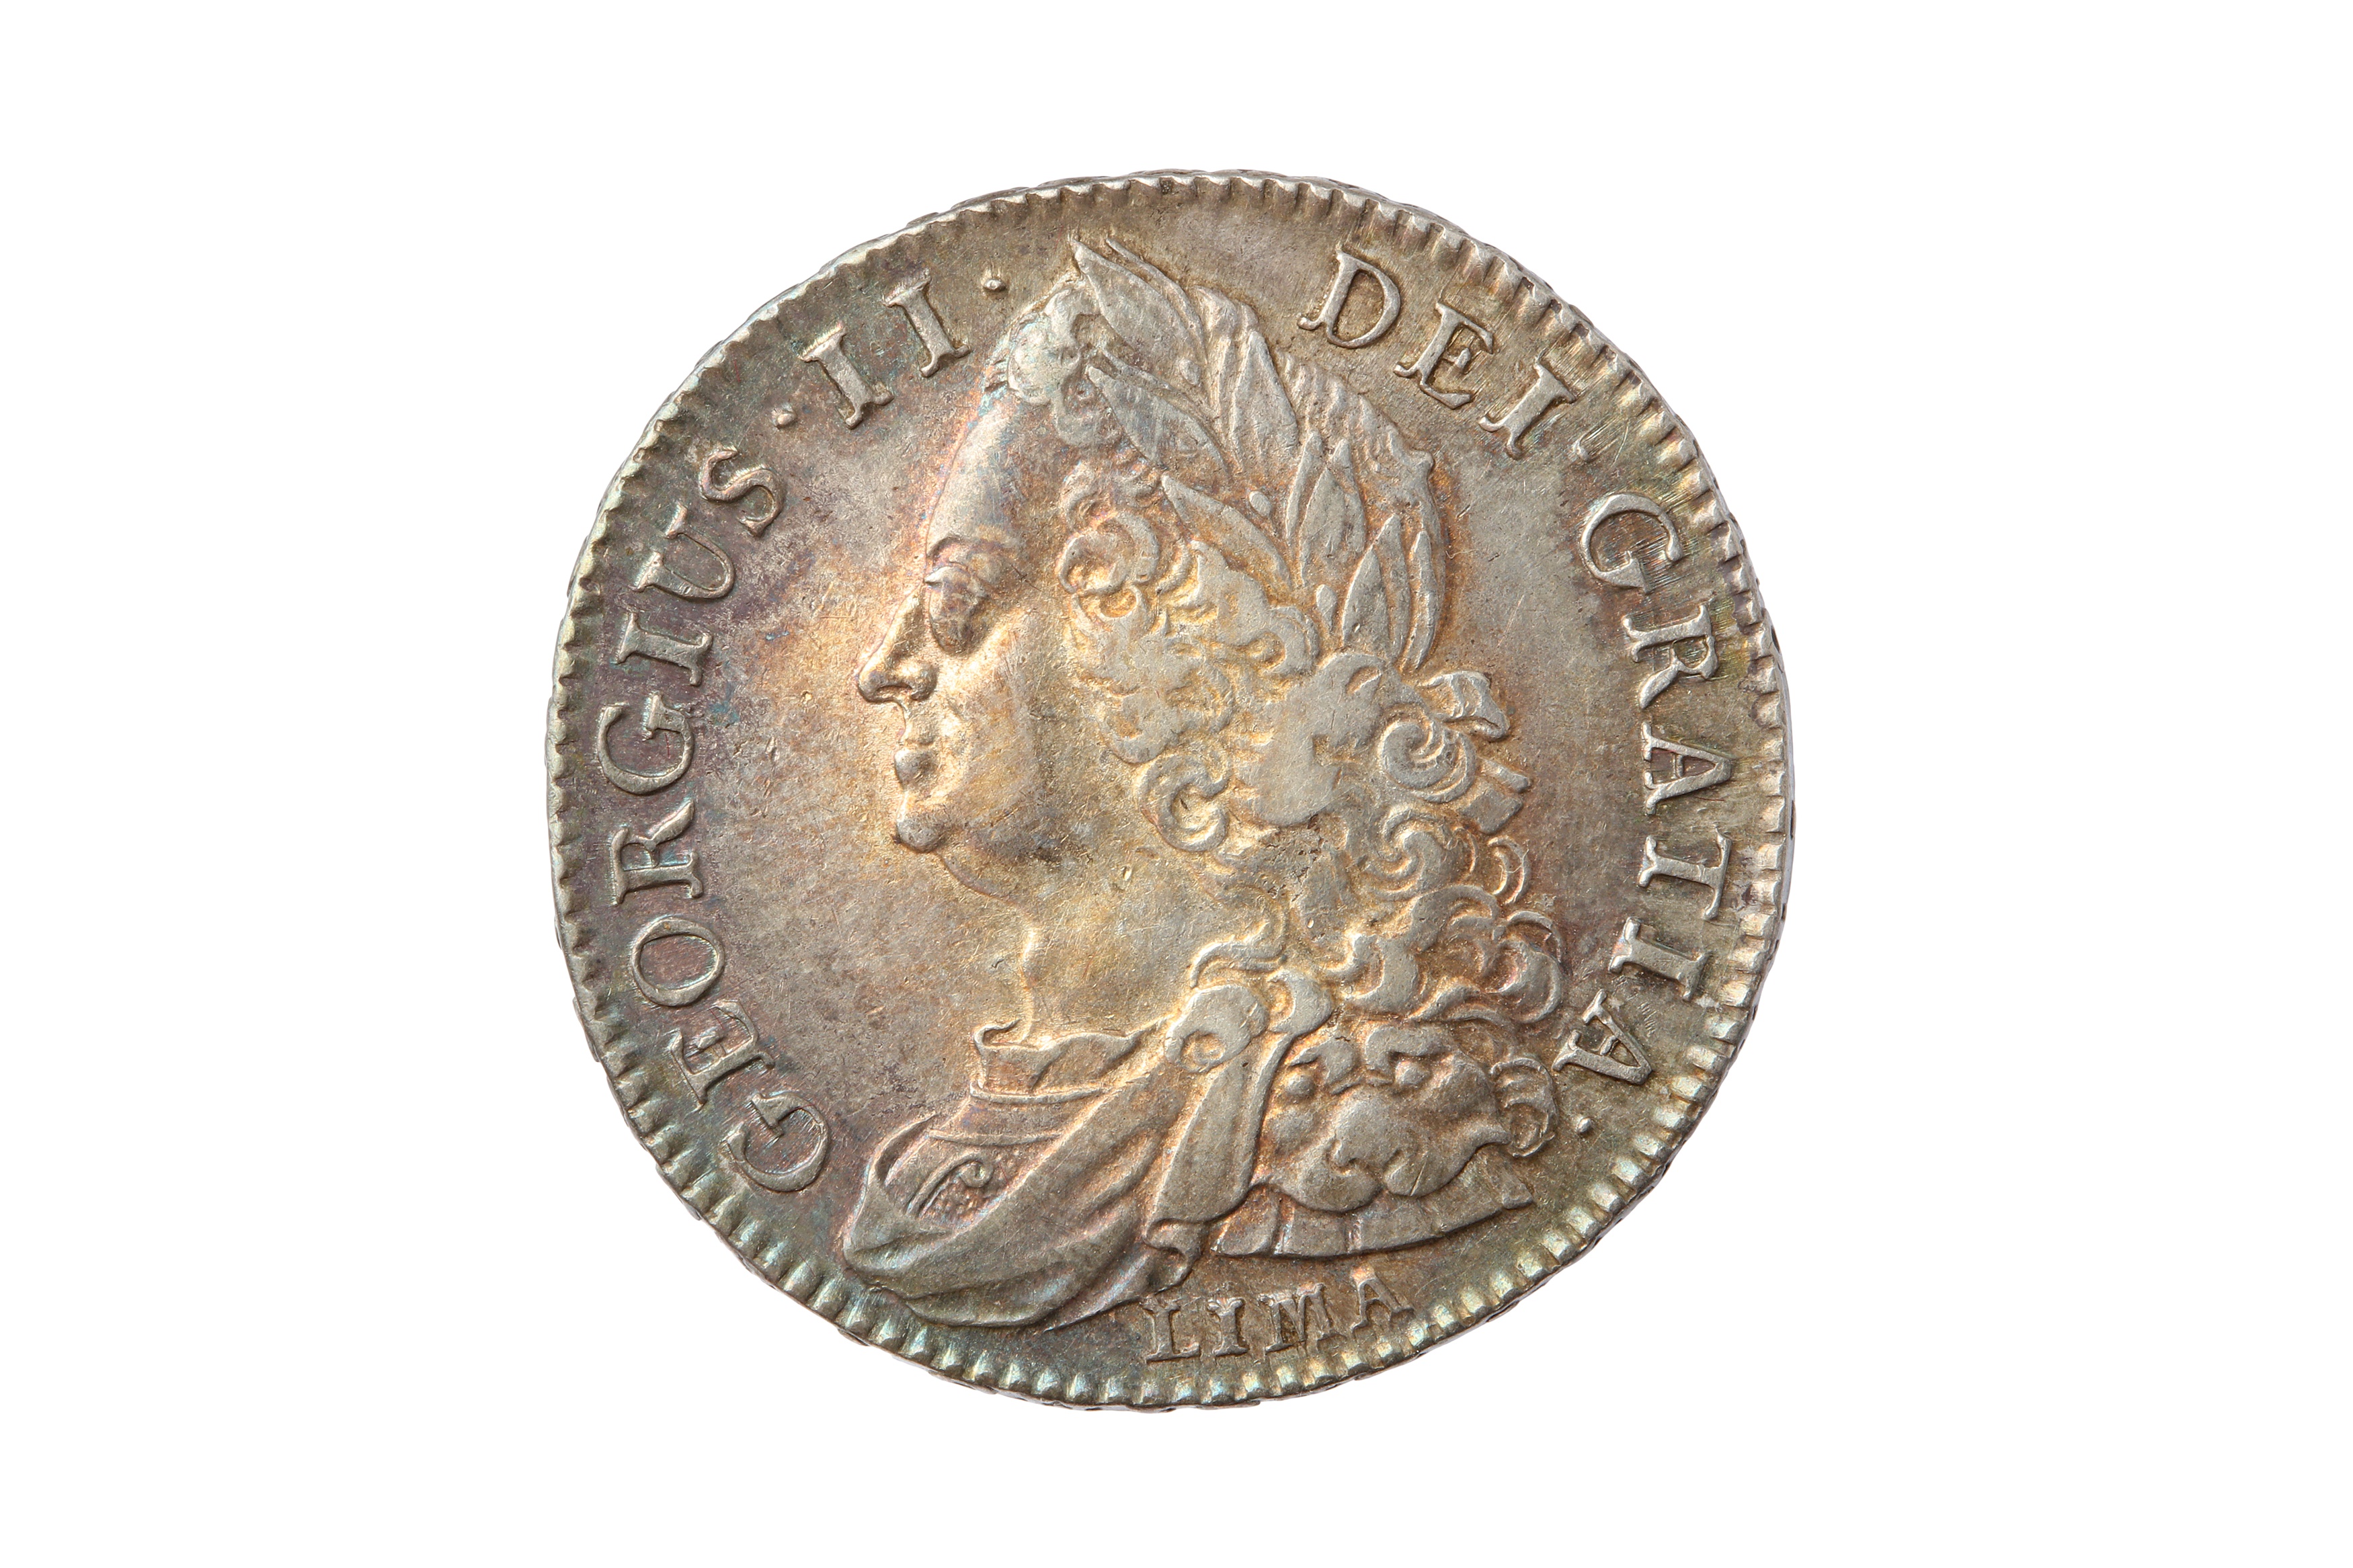 GEORGE II (1727 - 1760), 1745 LIMA HALFCROWN.